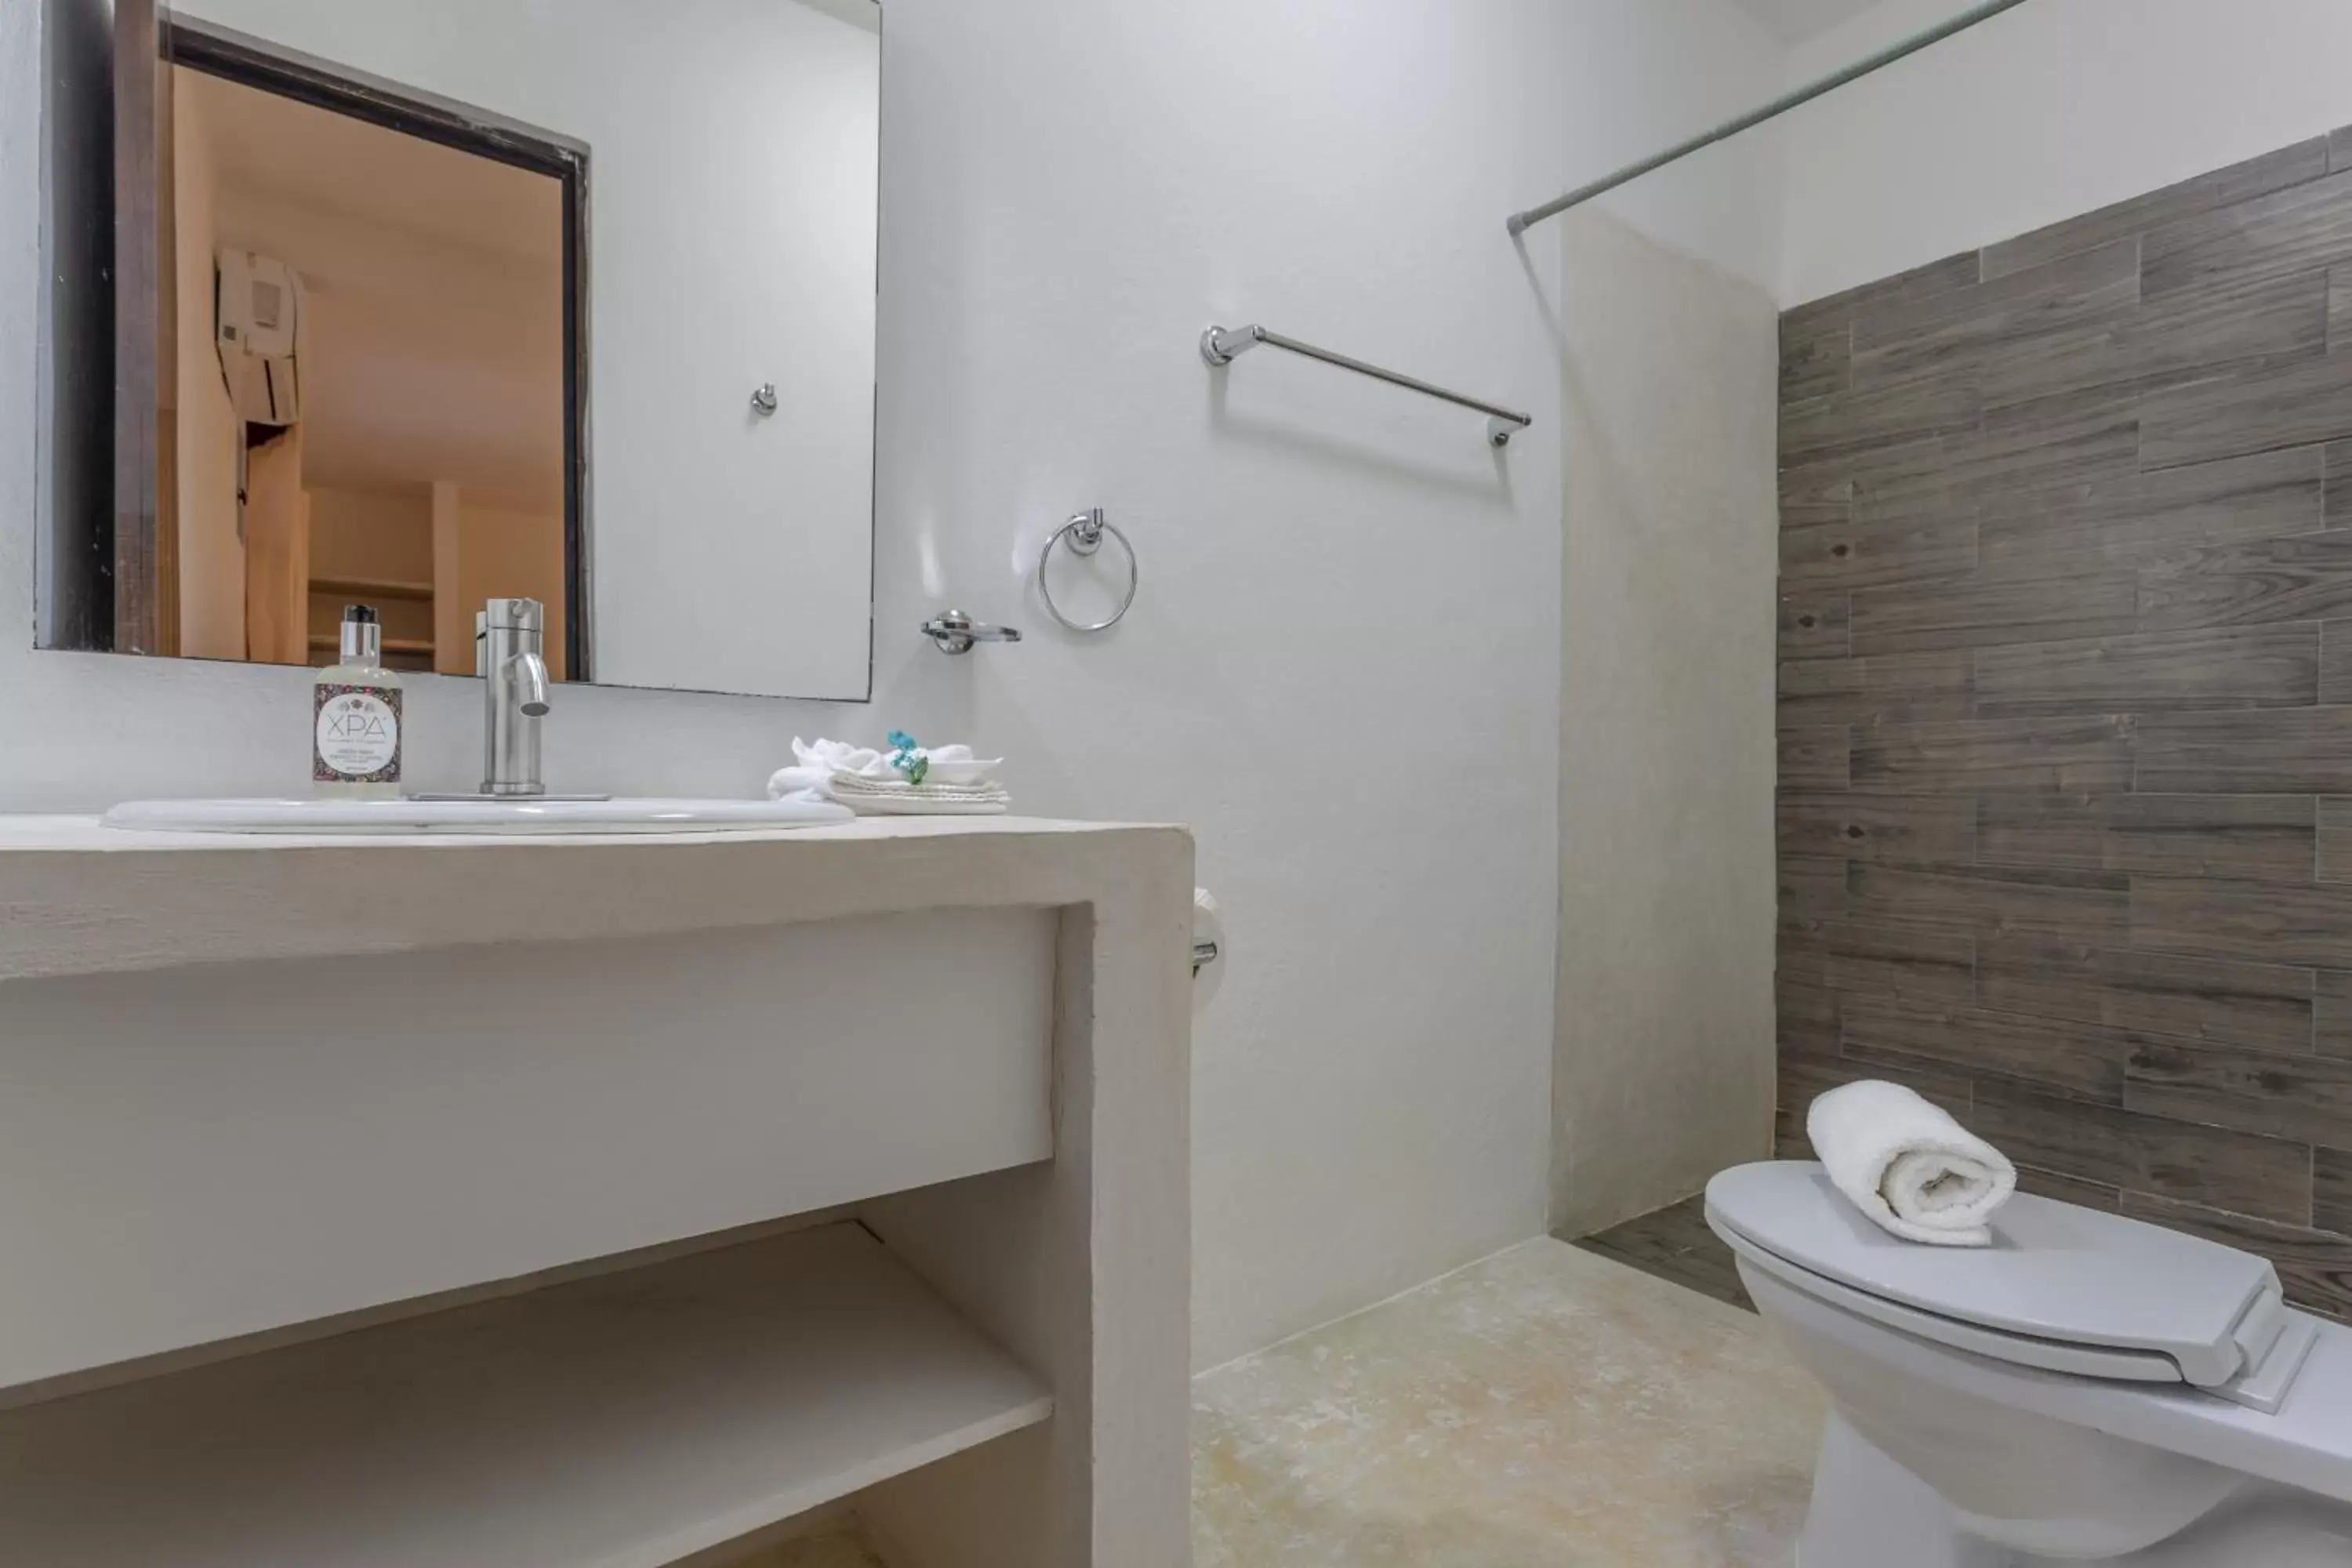 Bathroom in Kin Ha Tulum Hotel